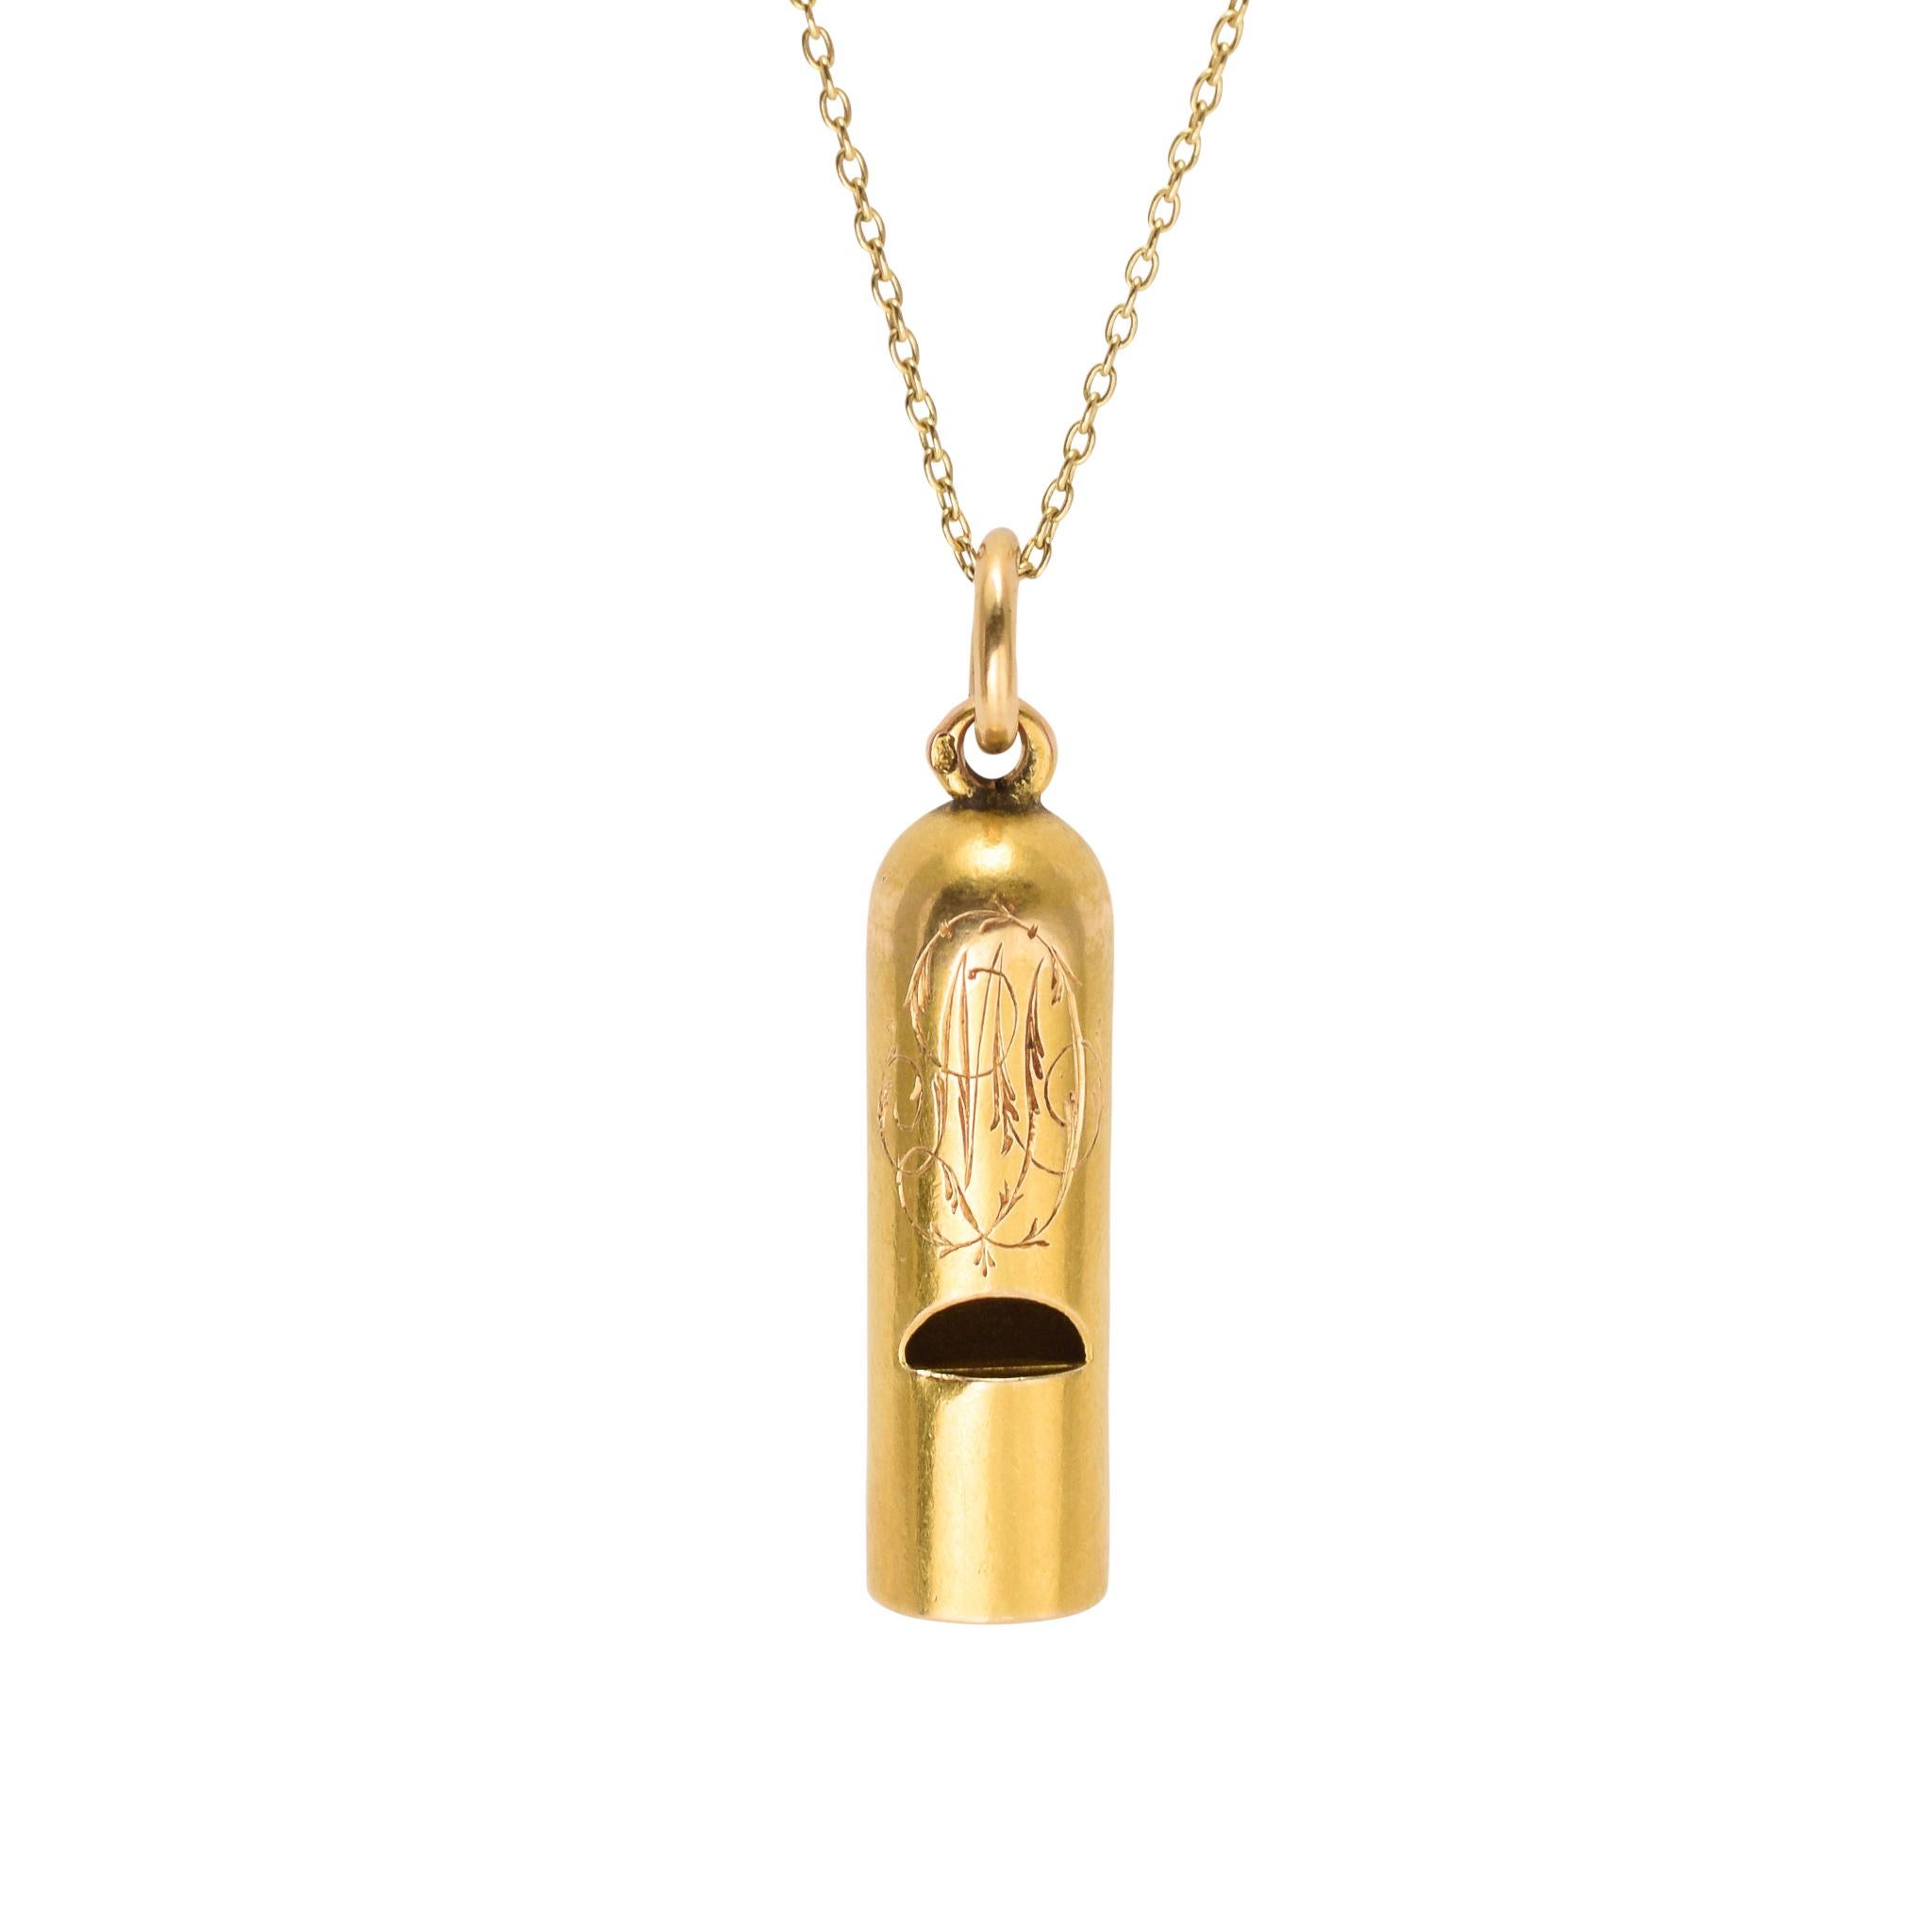 Louis Vuitton Pendant Chain Whistle Necklace, Women's Fashion